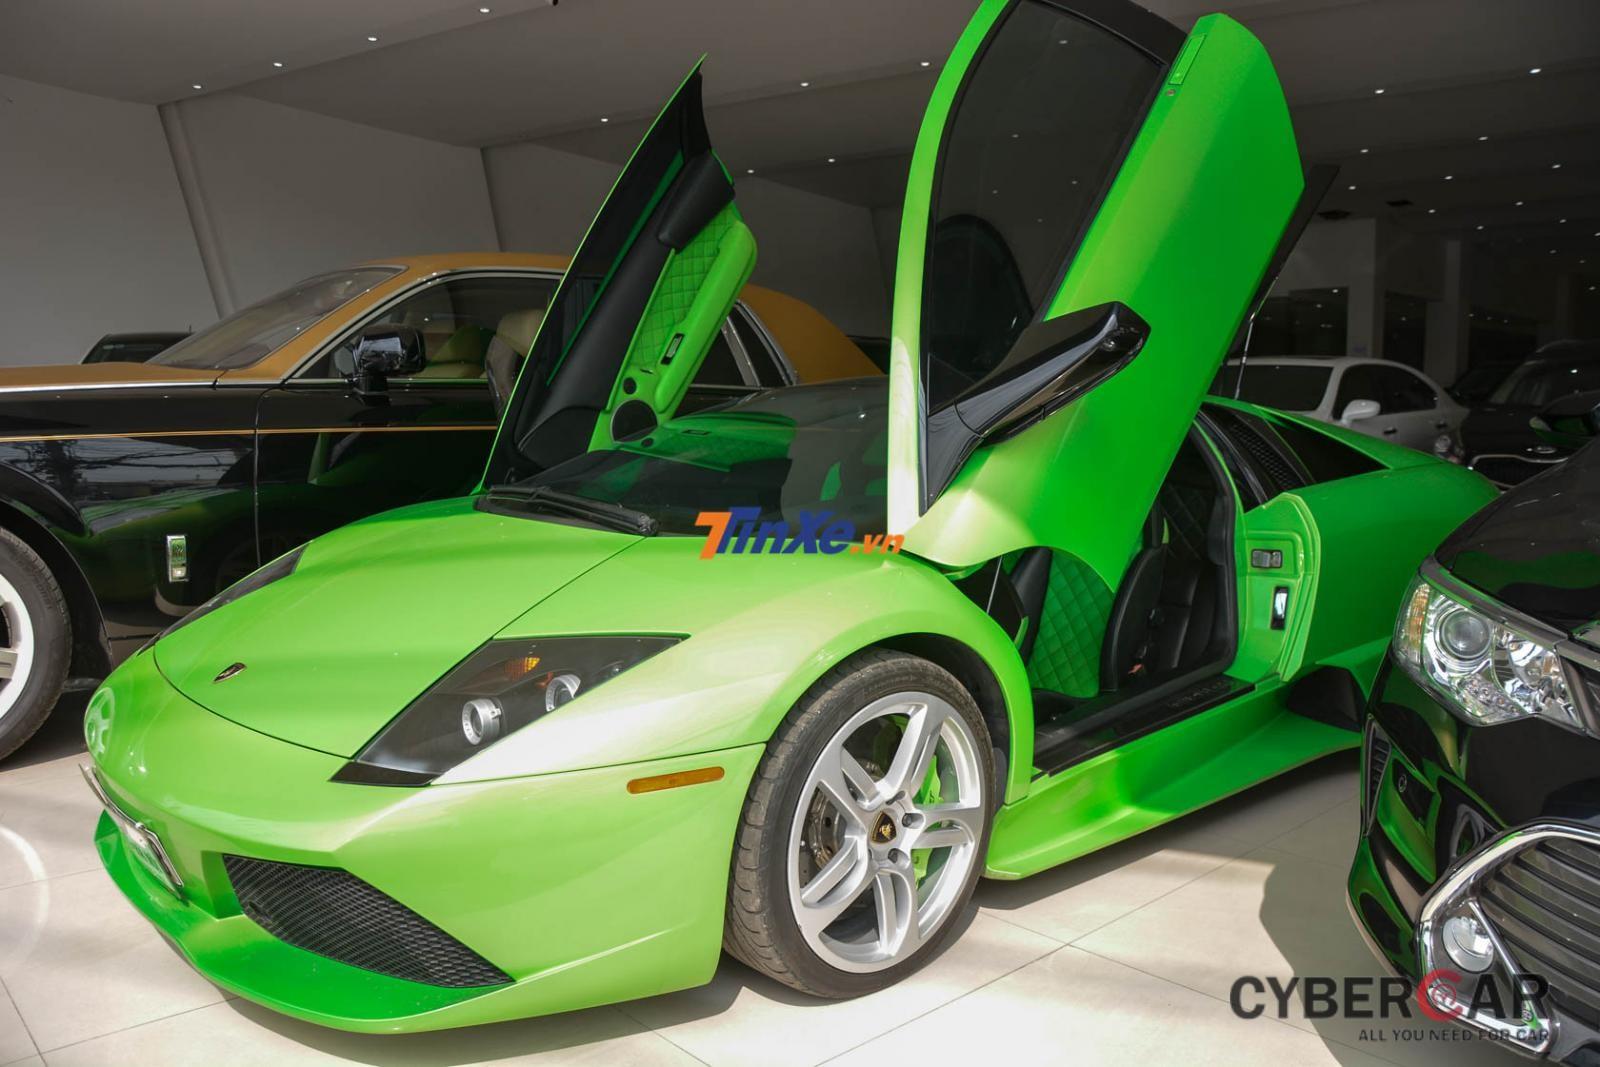 Hiện siêu xe Lamborghini Murcielago LP640 màu xanh cốm đang được rao bán 9,8 tỷ đồng